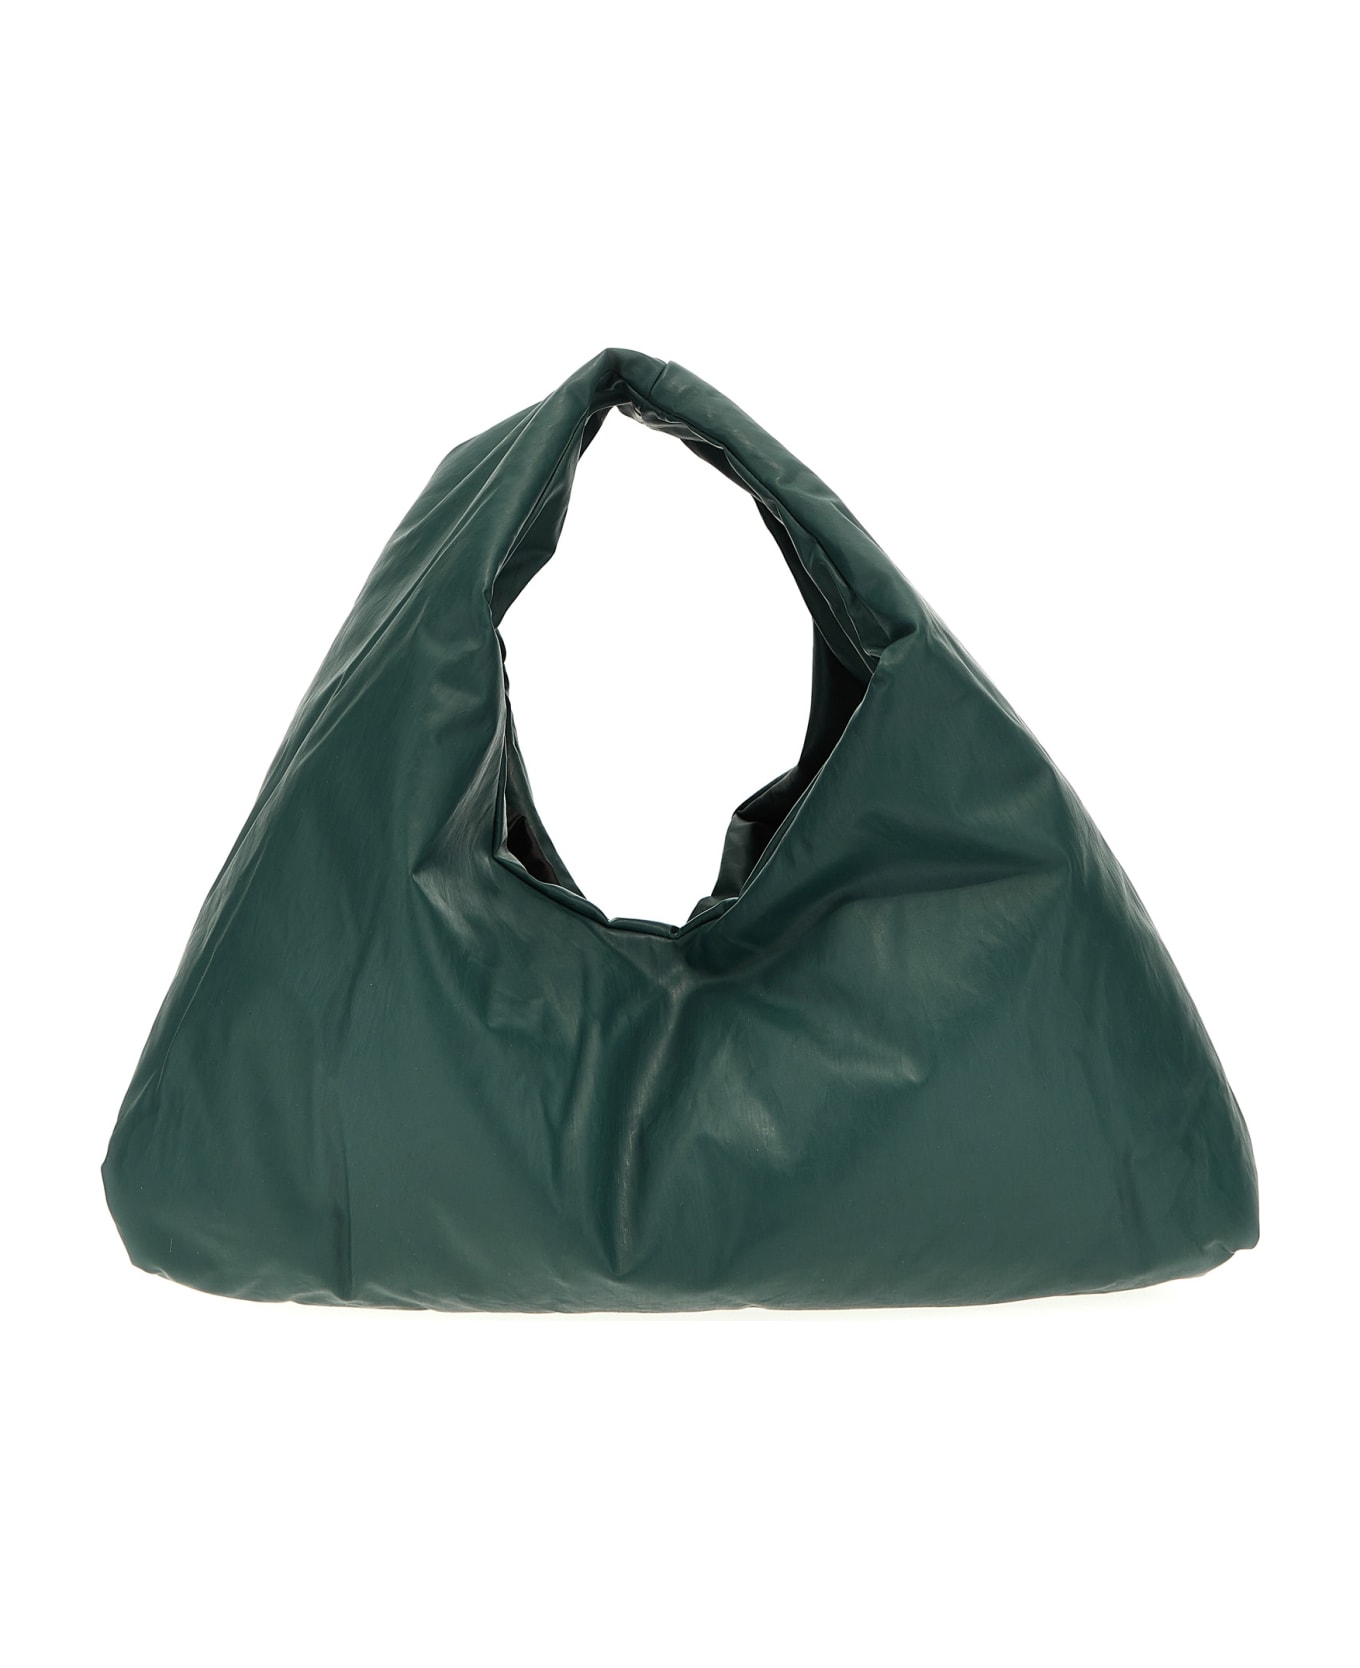 KASSL Editions 'anchor Small' Handbag - Green